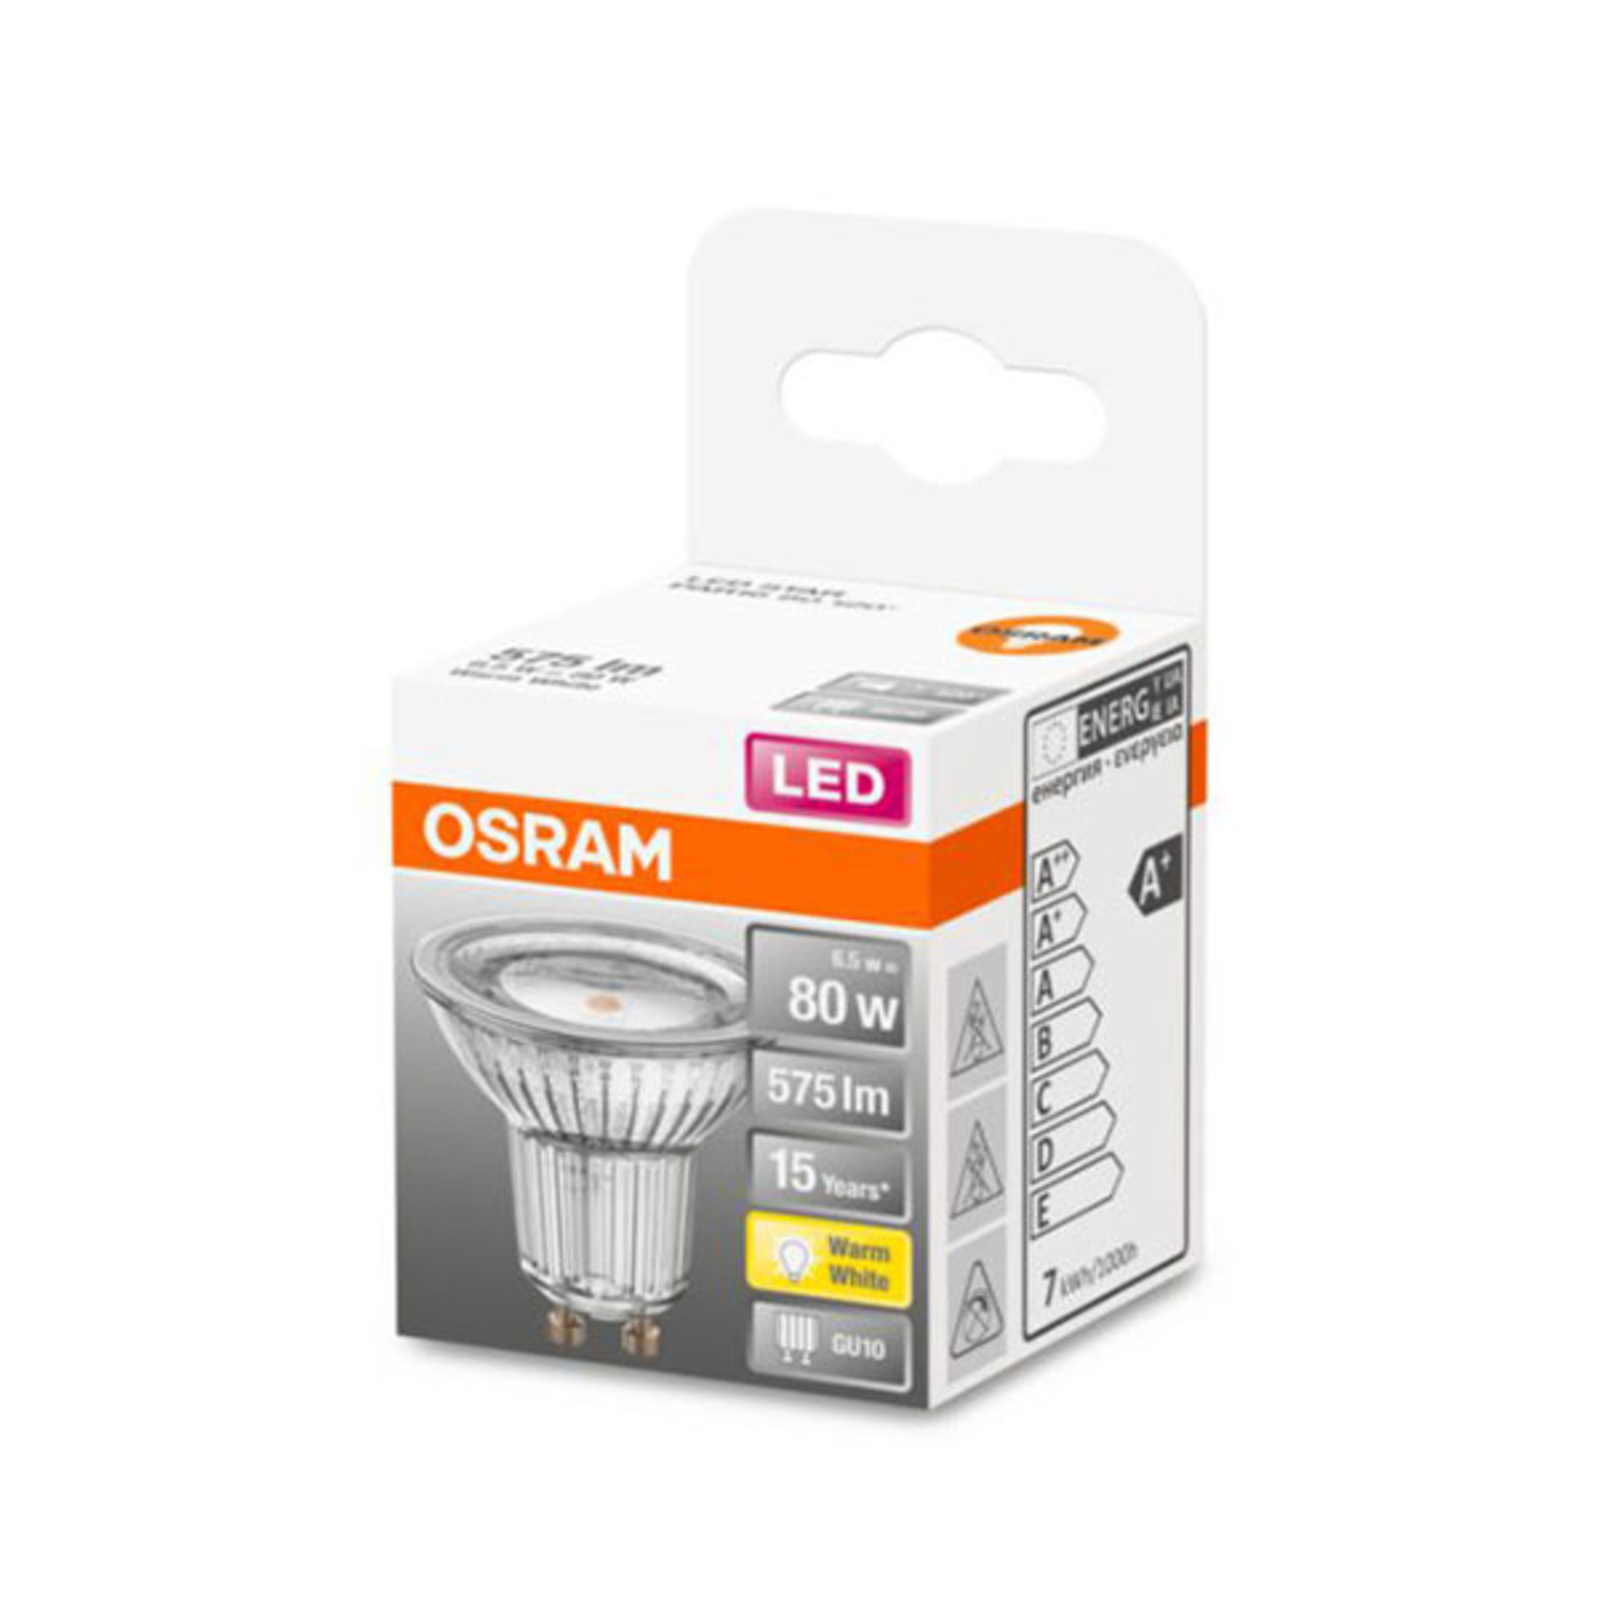 OSRAM LED-Reflektor GU10 6,9W warmweiß 120°